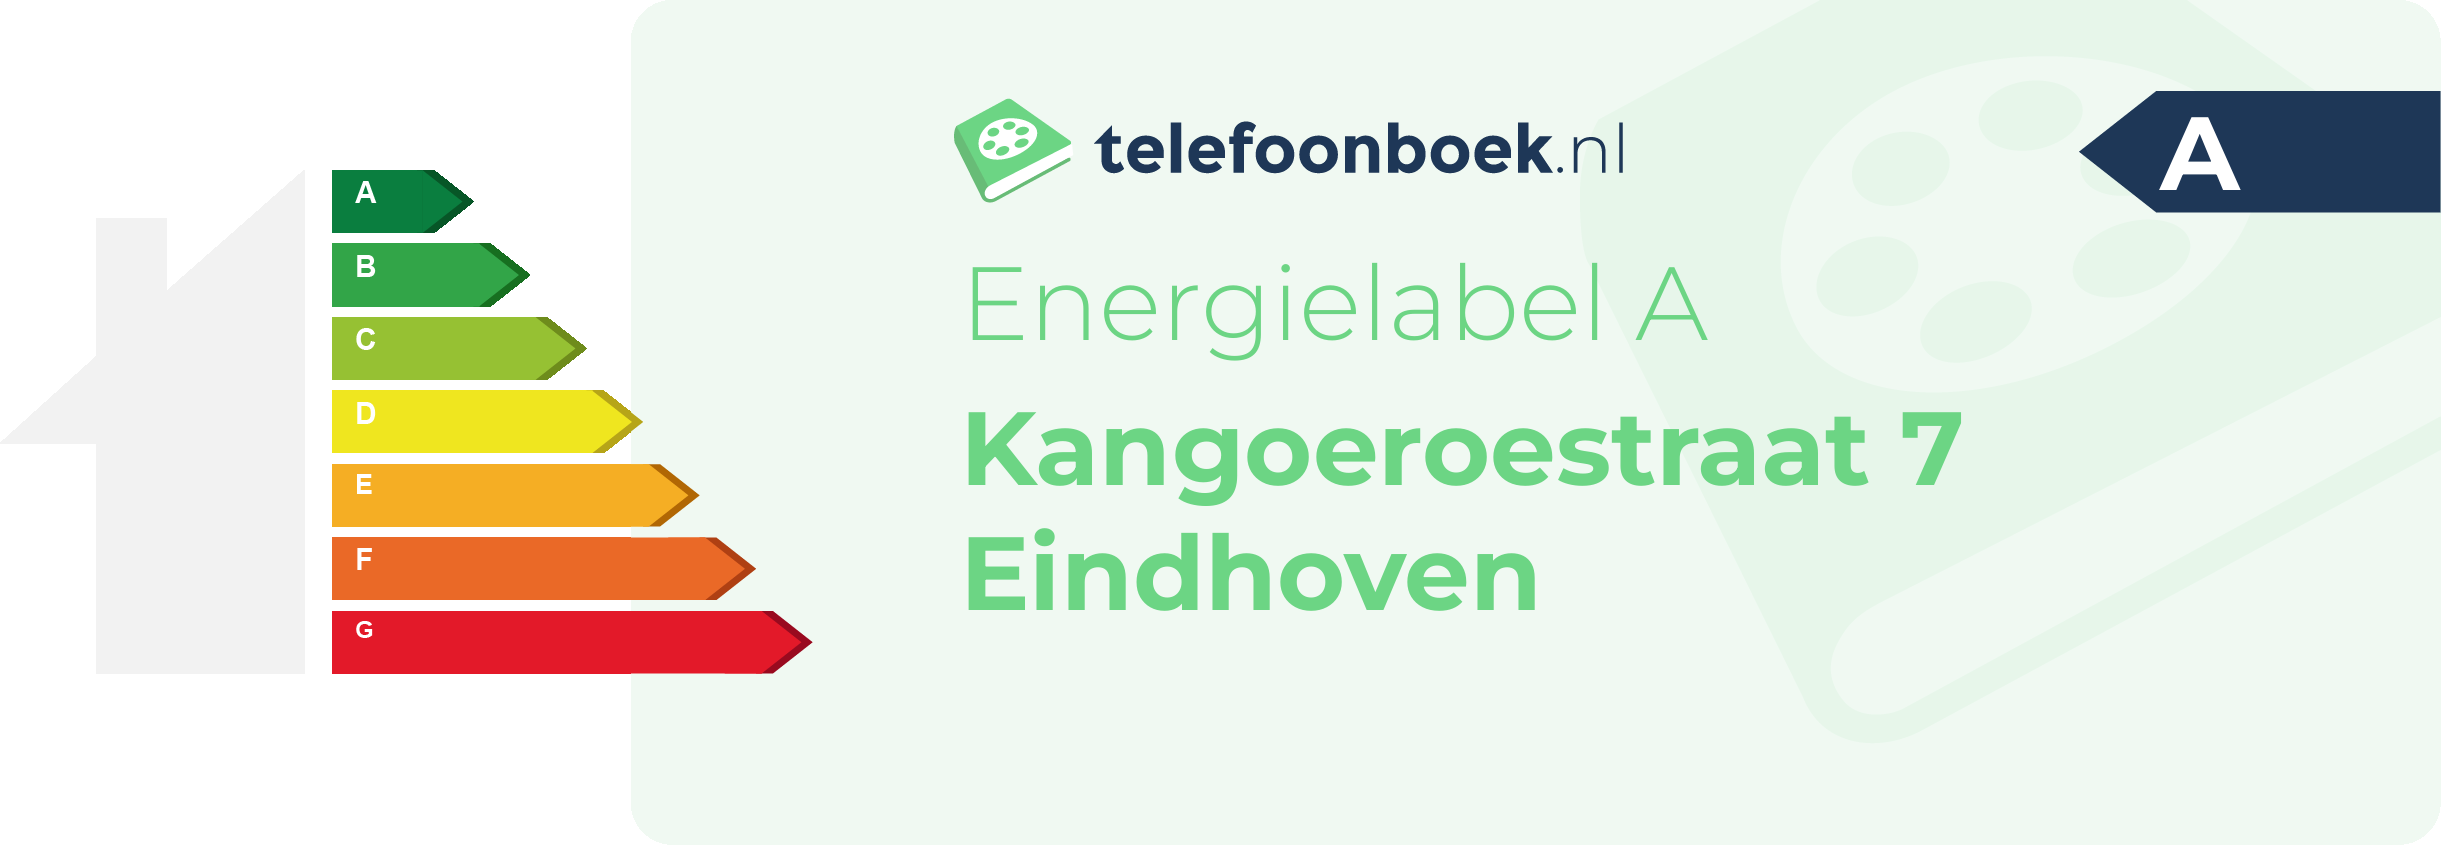 Energielabel Kangoeroestraat 7 Eindhoven